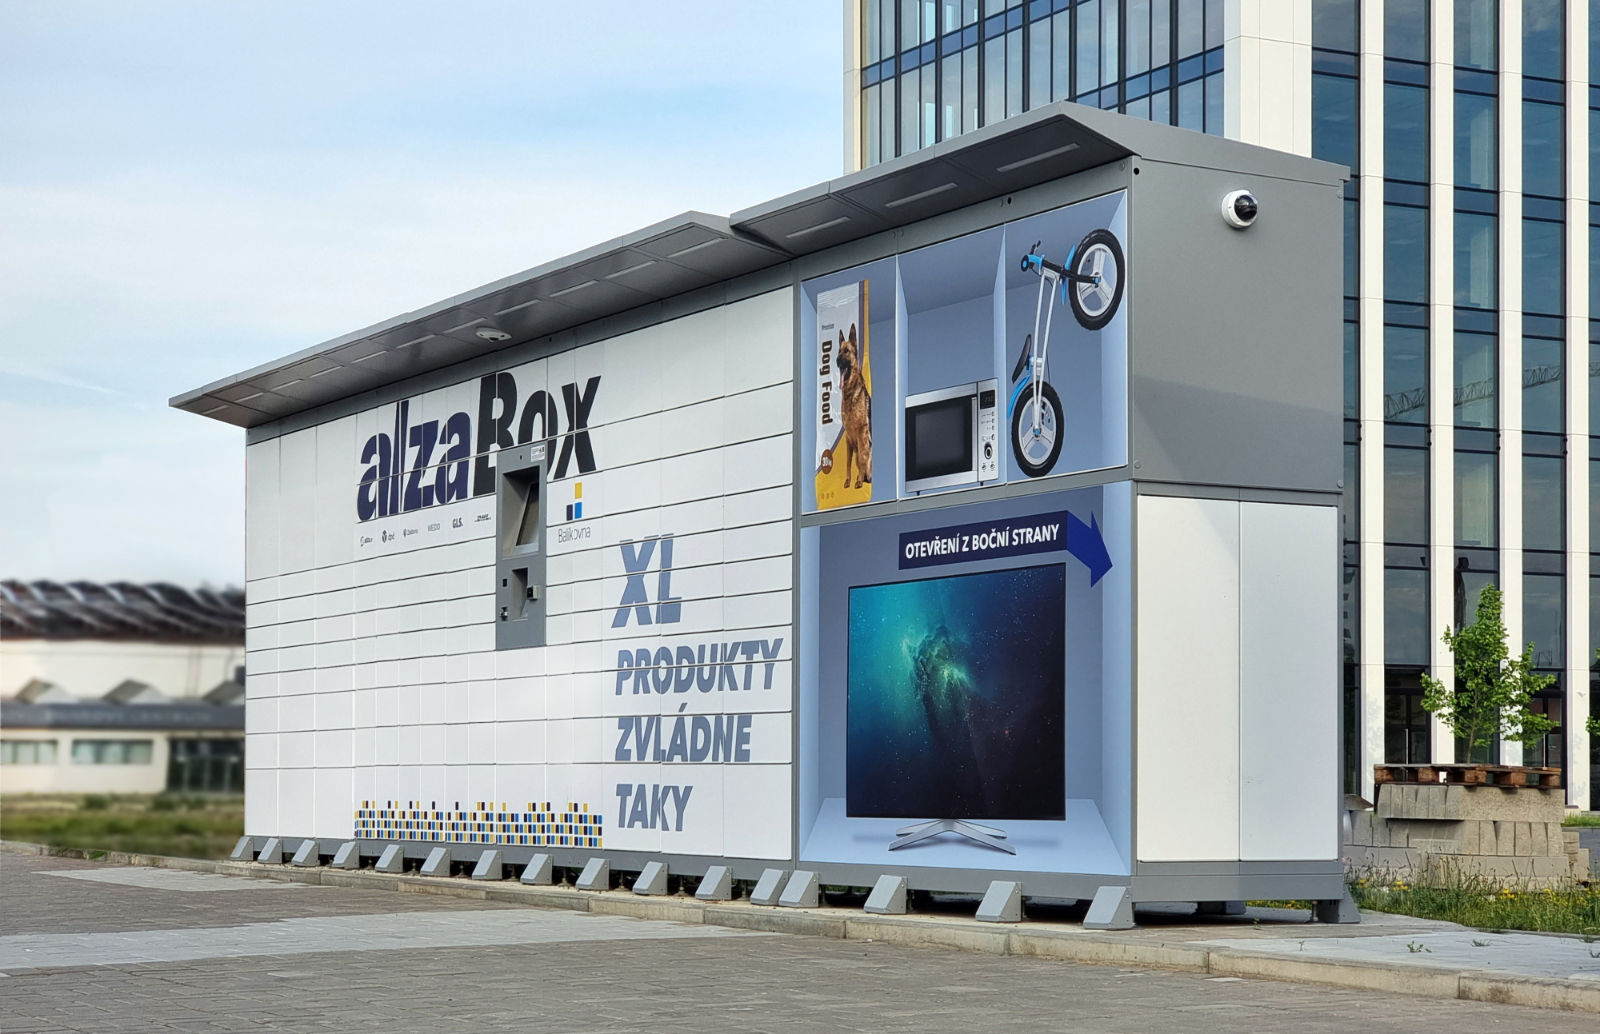 alfaBOX-Paketzustellstation mit Erweiterung für die Zustellung von Großpaketen und TV-Geräten